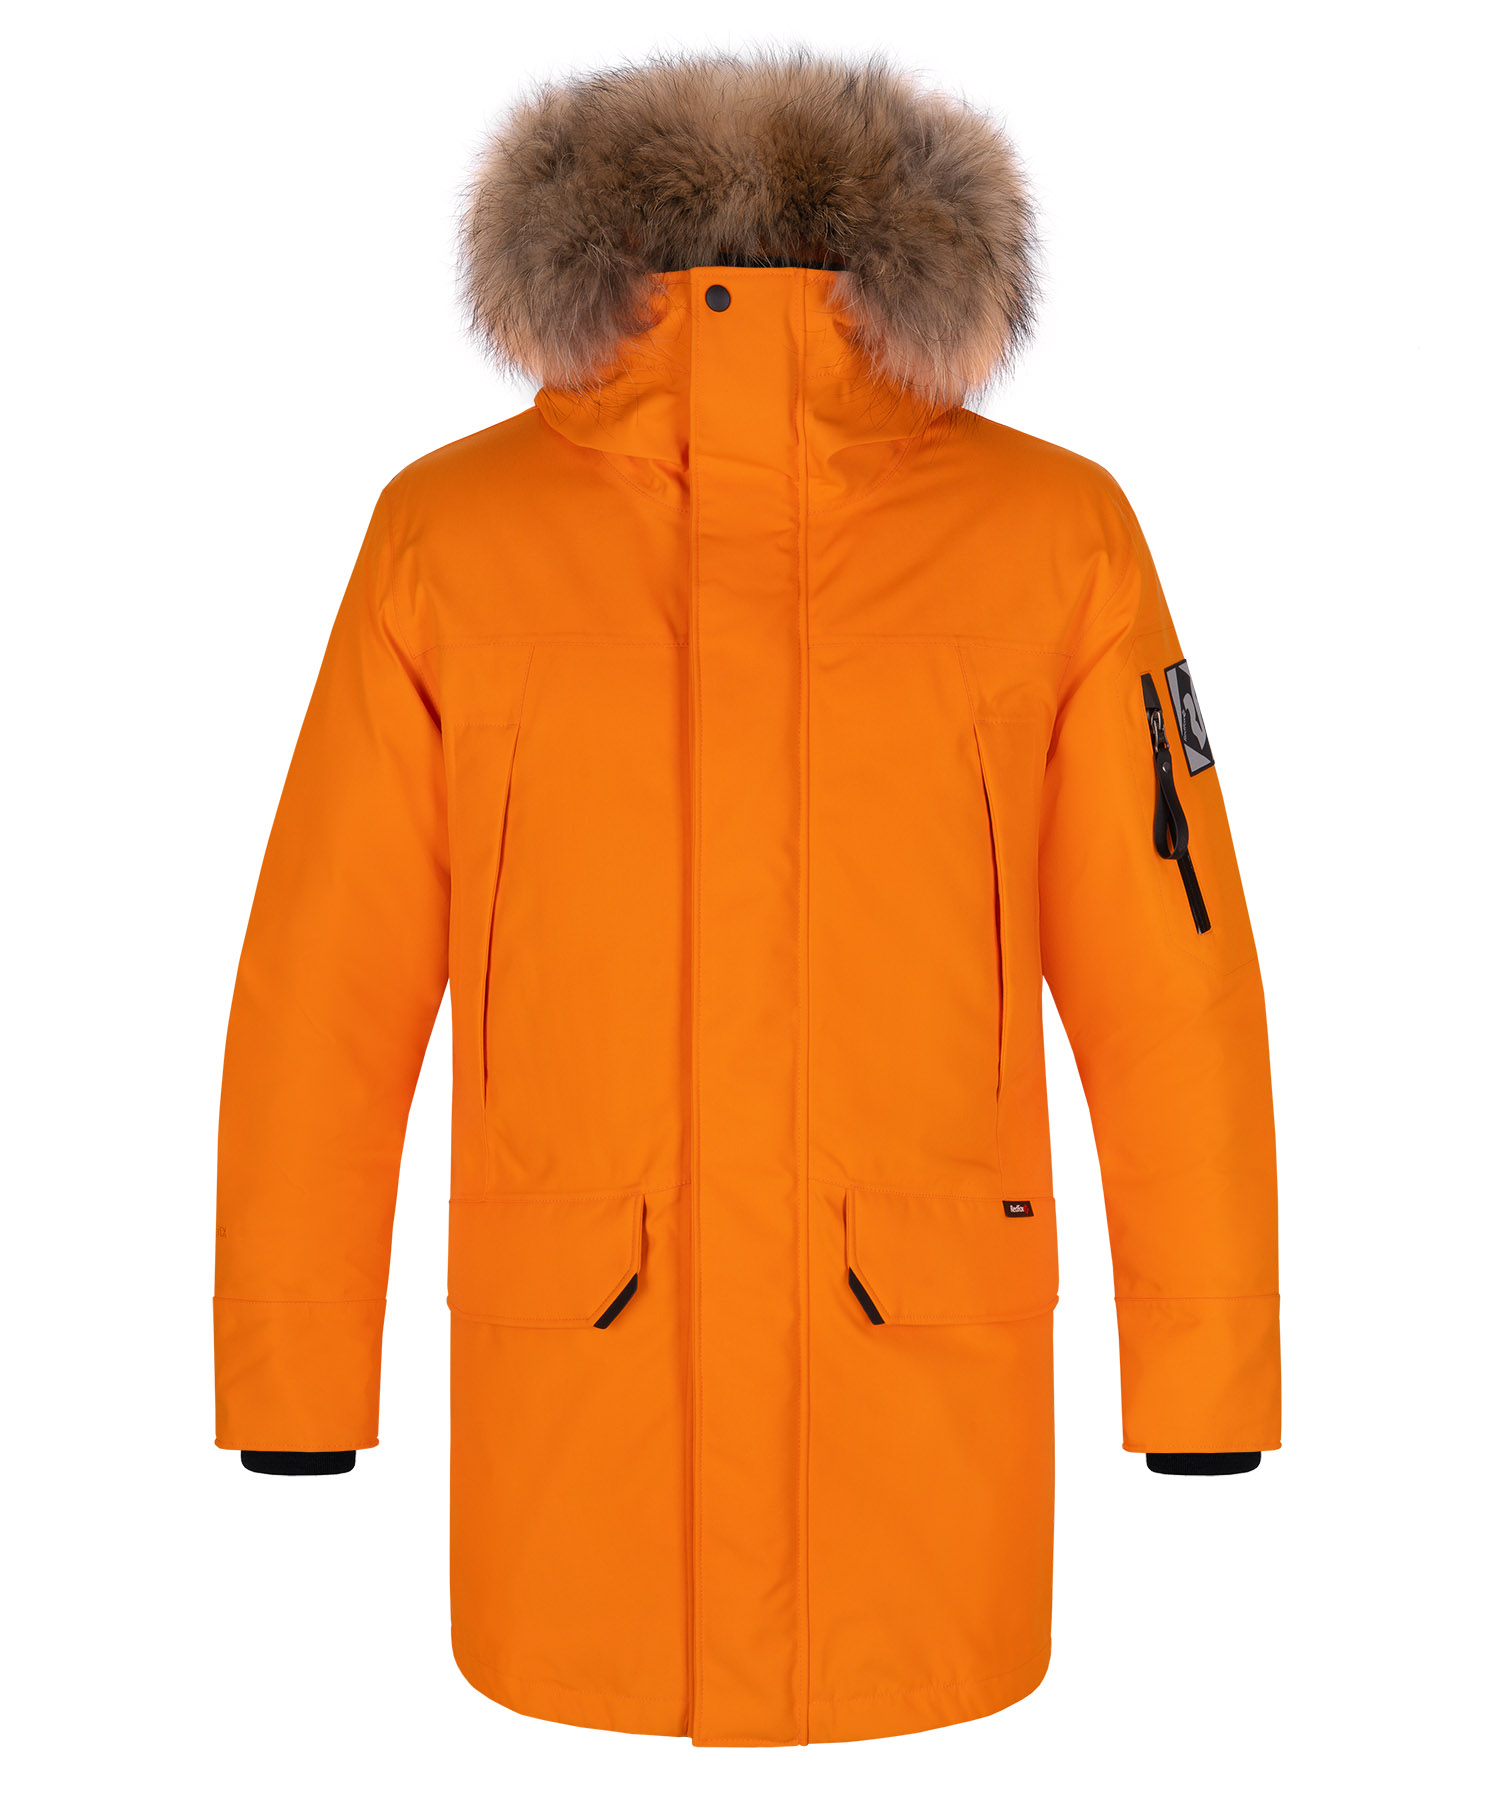 Куртка пуховая Kodiak V GTX Мужская Red Fox, цвет оранжевый, размер L